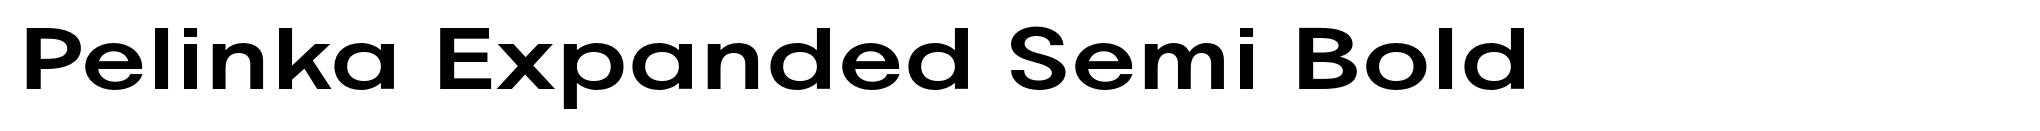 Pelinka Expanded Semi Bold image